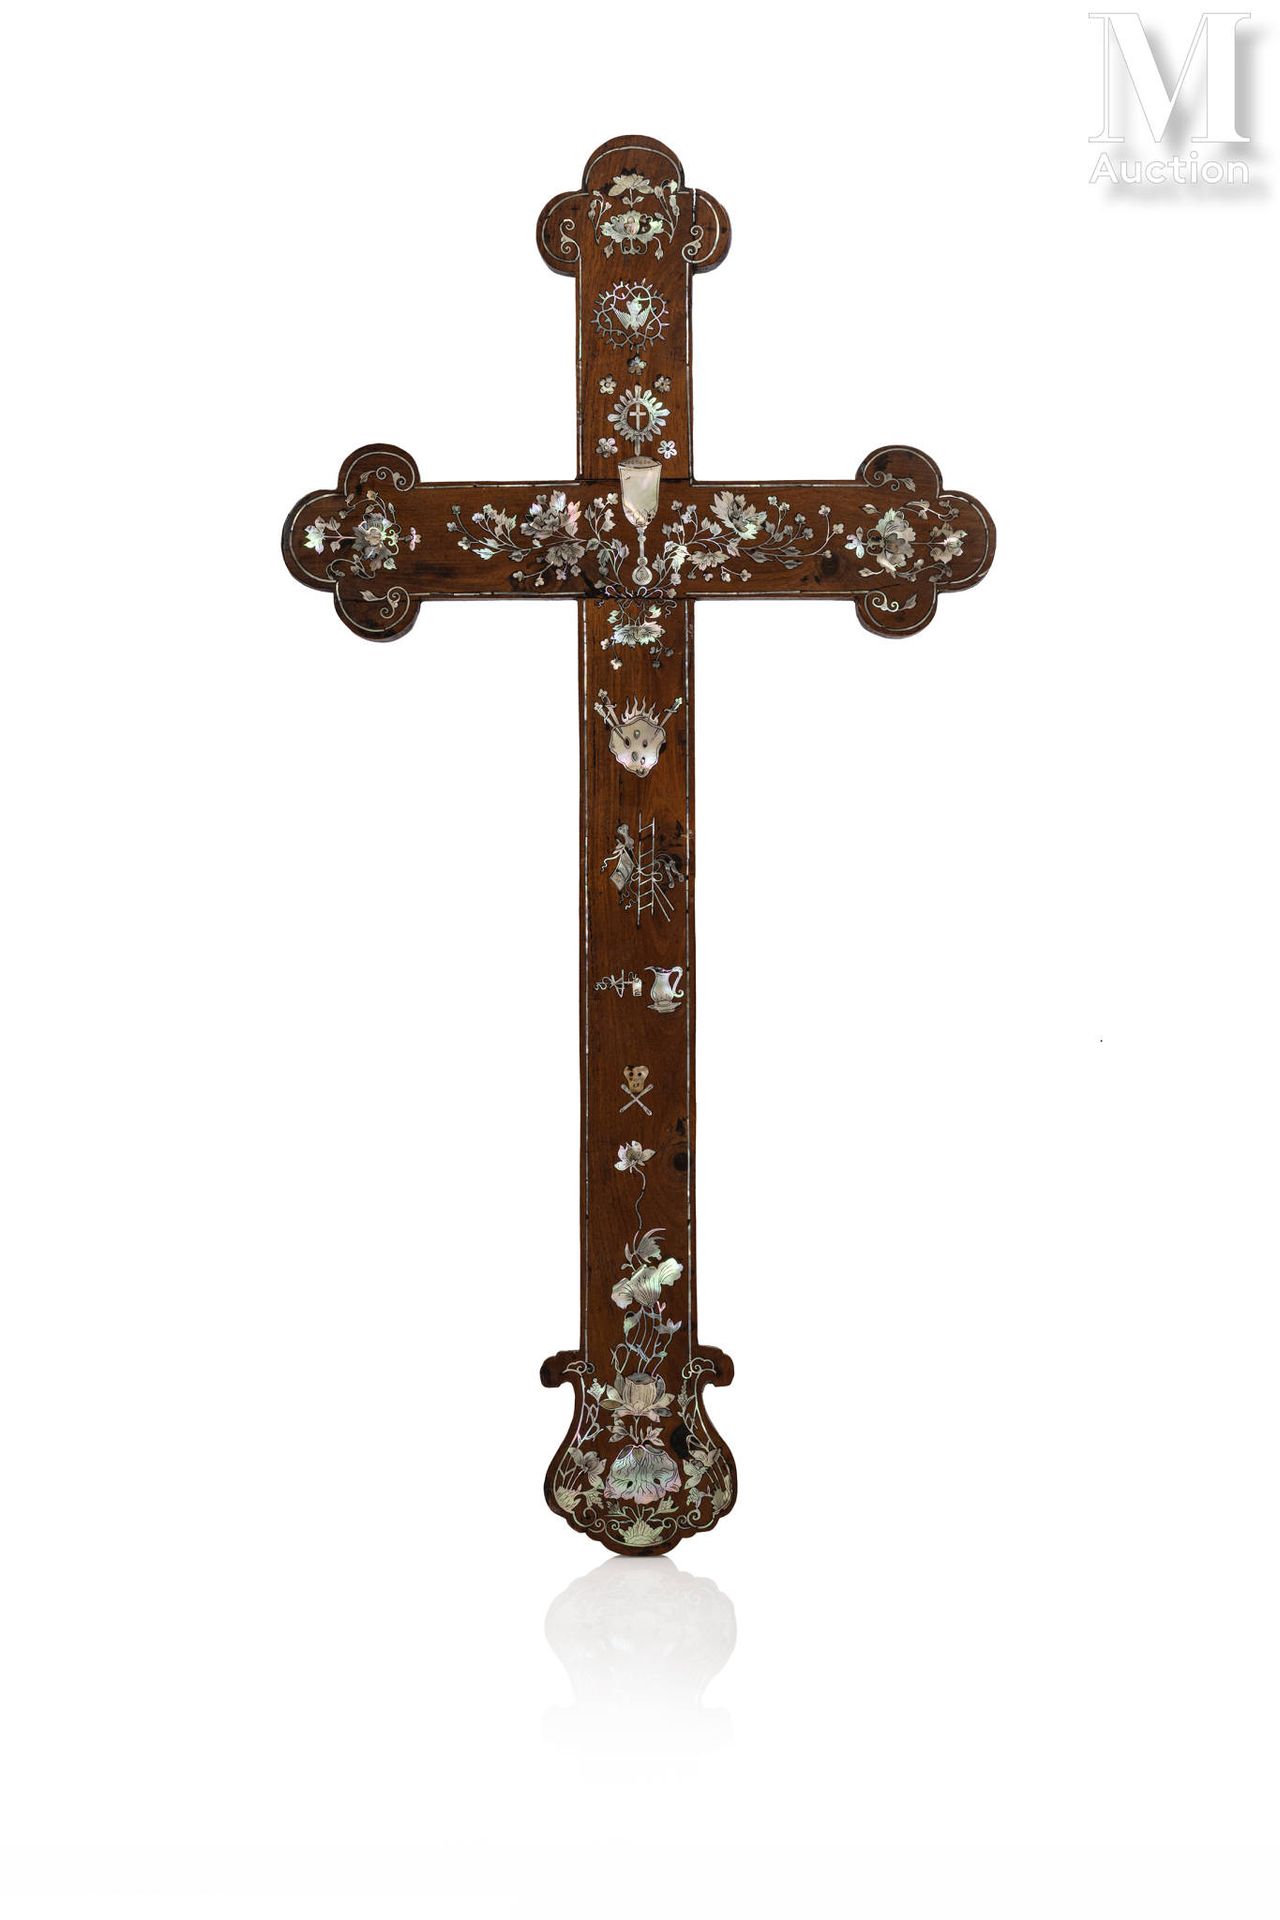 CHINE DU SUD, XIXe siècle Christliches Kreuz

aus Naturholz mit Perlmutteinlagen&hellip;